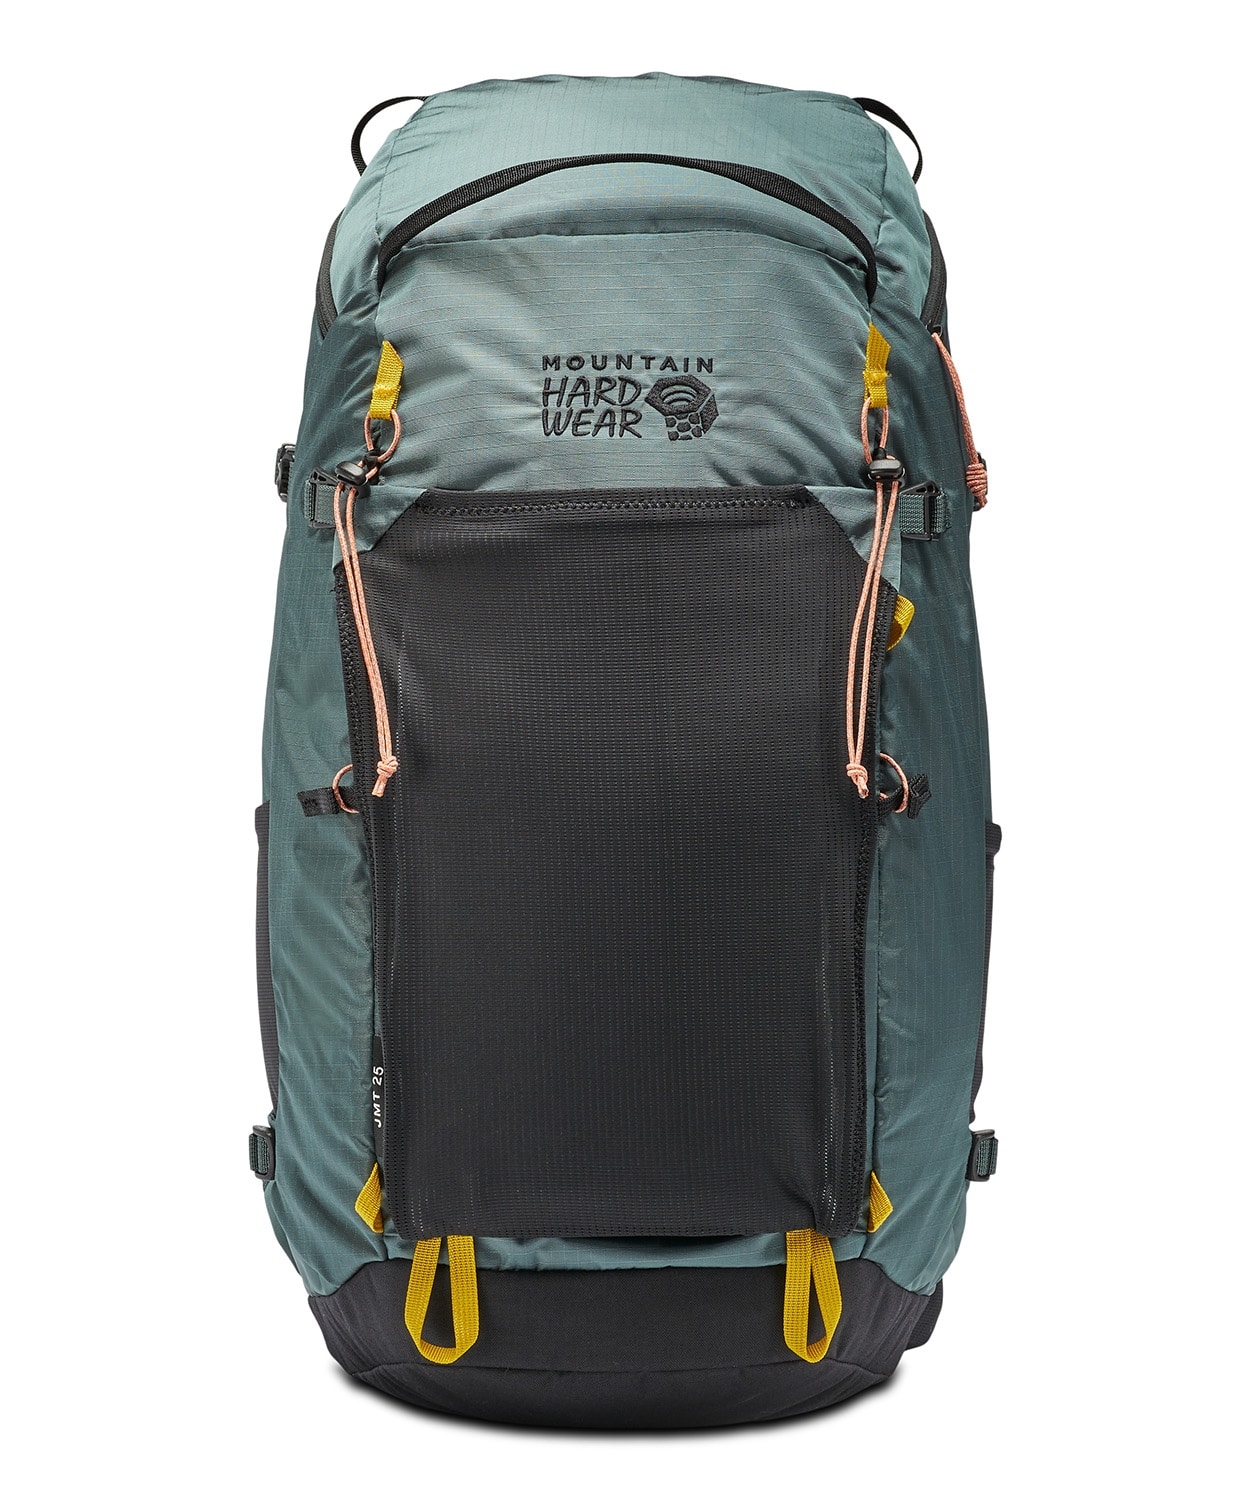 Mountain Hardwear 25L Backpack